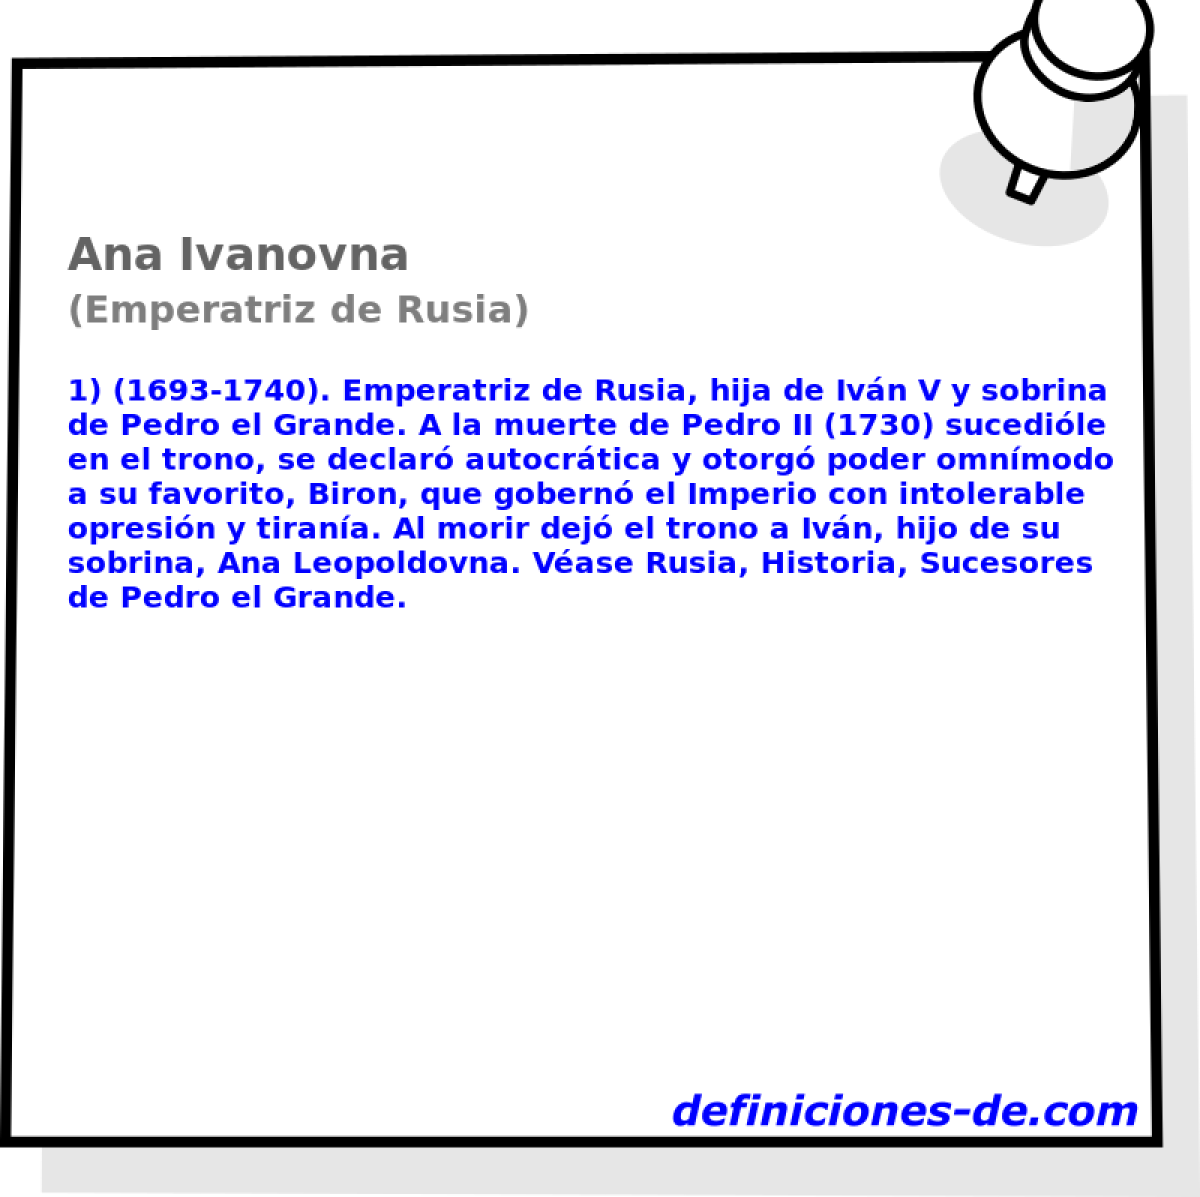 Ana Ivanovna (Emperatriz de Rusia)